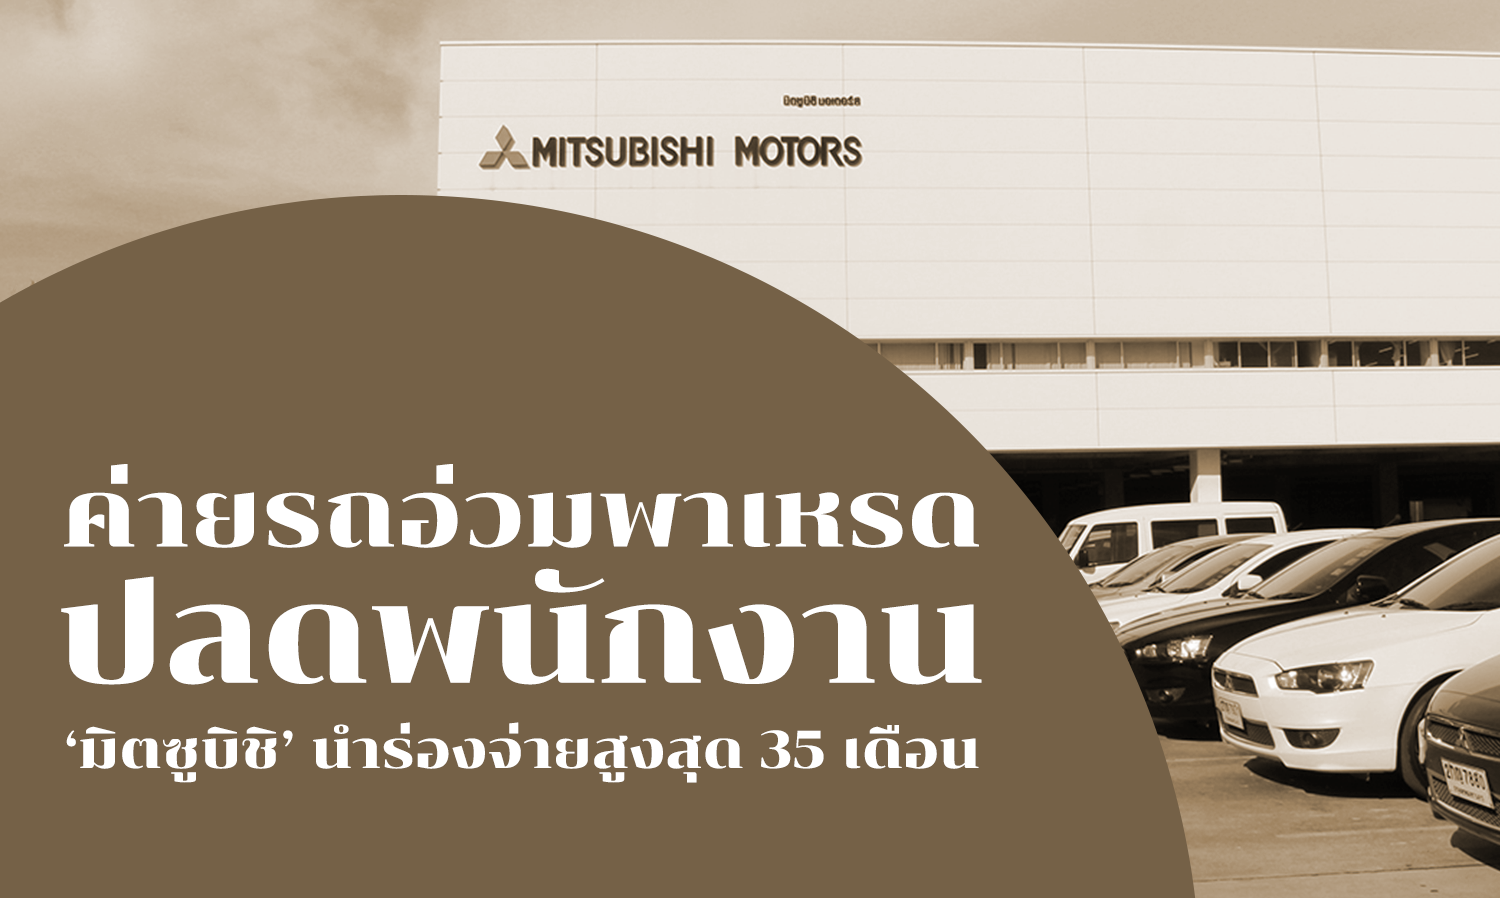 ค่ายรถอ่วมพาเหรดปลด พนักงาน ‘มิตซูบิชิ’ นำร่องจ่ายสูงสุด 35 เดือน